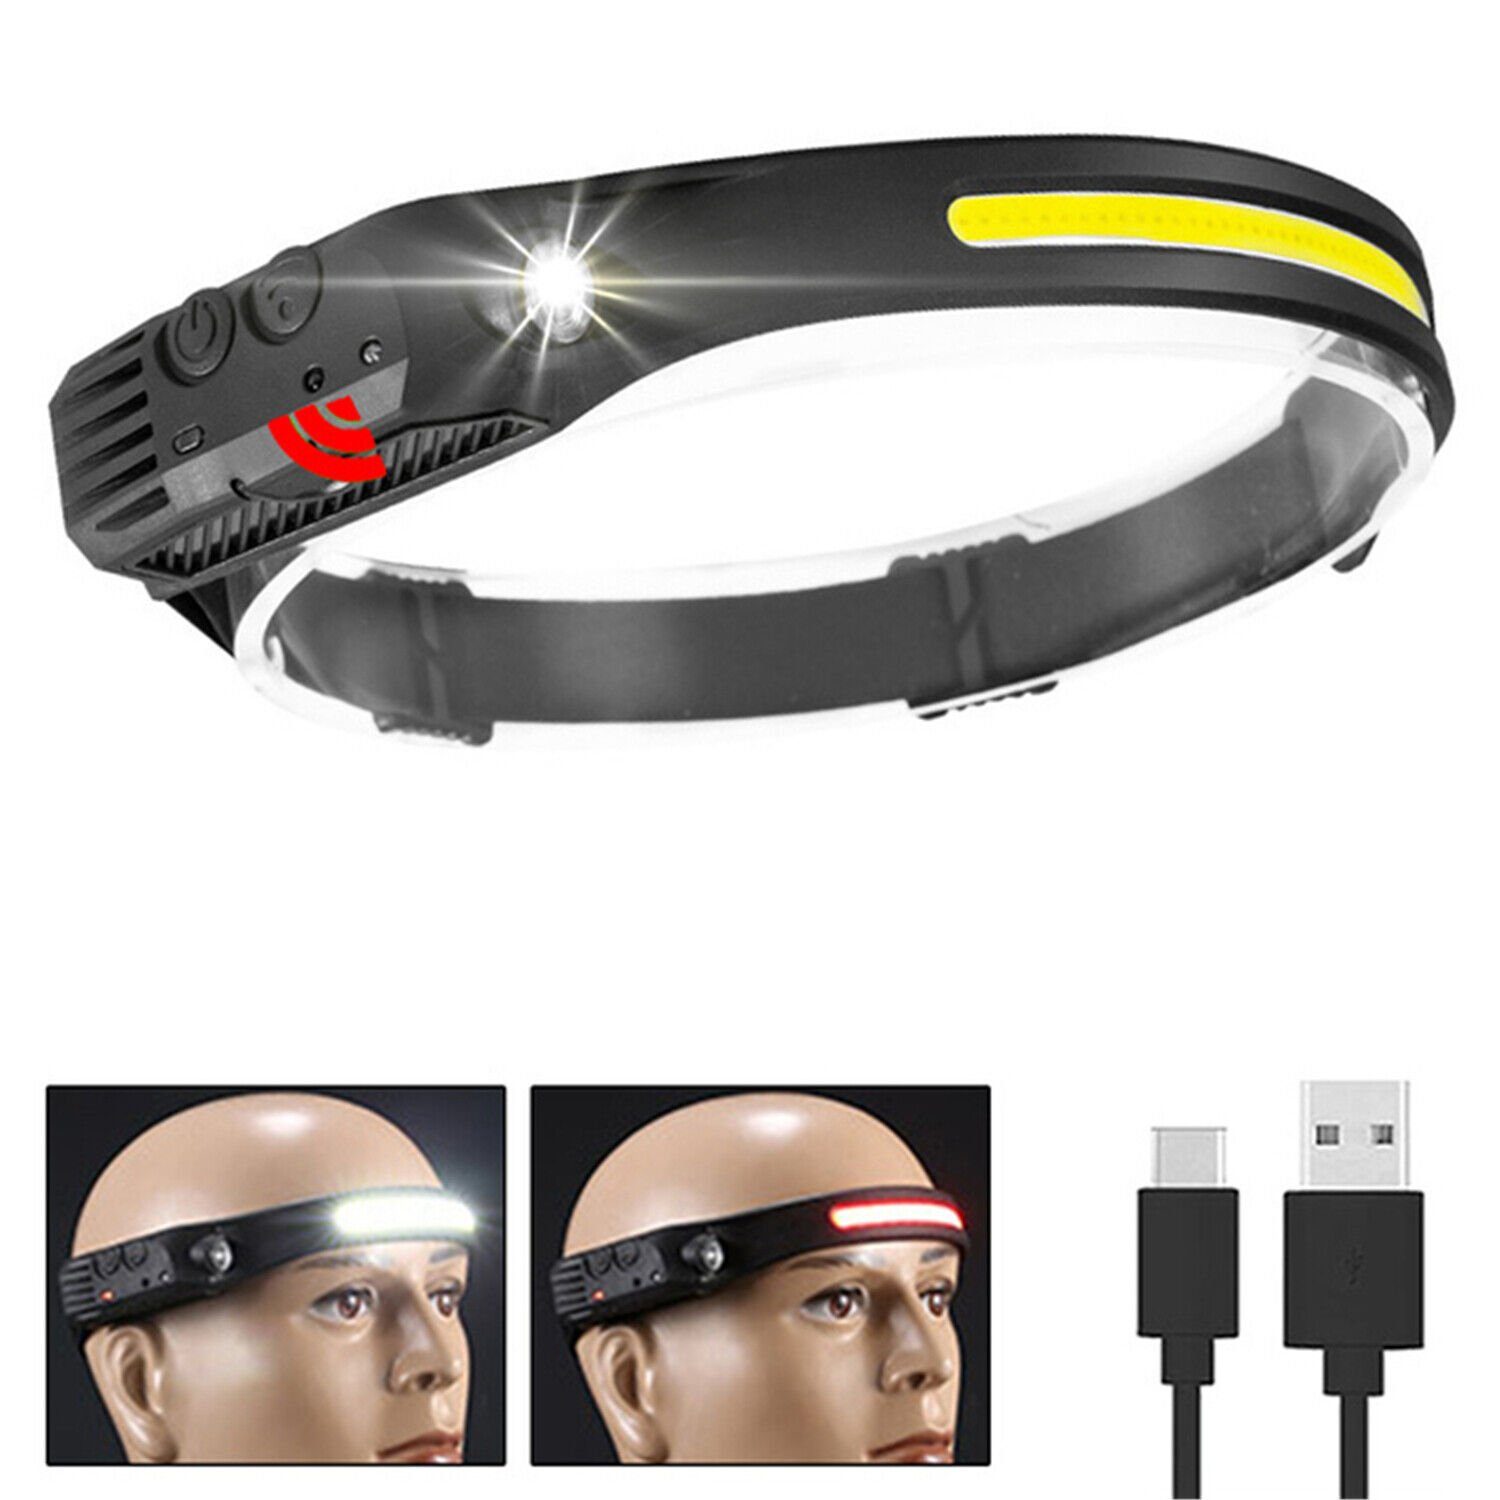 Olotos Stirnlampe LED COB COB USB Weisslicht+Rotlicht - IPX4 1-3 Sensor, Wasserdicht XPE Weitwinkel mit Rot COB 1 230°Ultra Kopflampe Gelb Wiederaufladbar Modi Scheinwerfer Licht 5